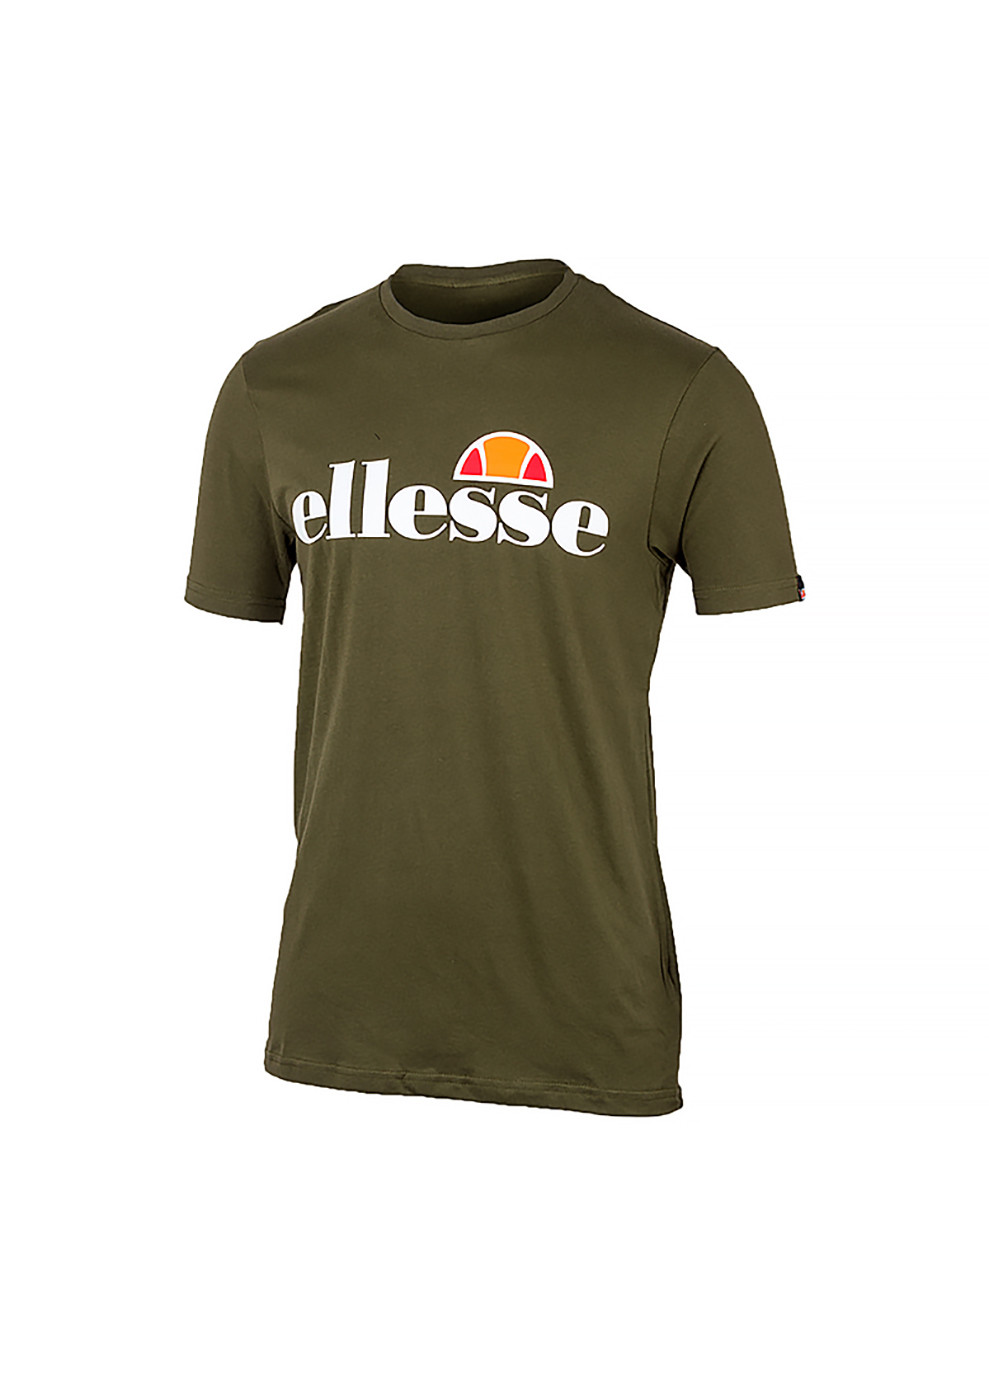 Хакі (оливкова) чоловіча футболка sl prado хакі s (shc07405-khaki s) Ellesse